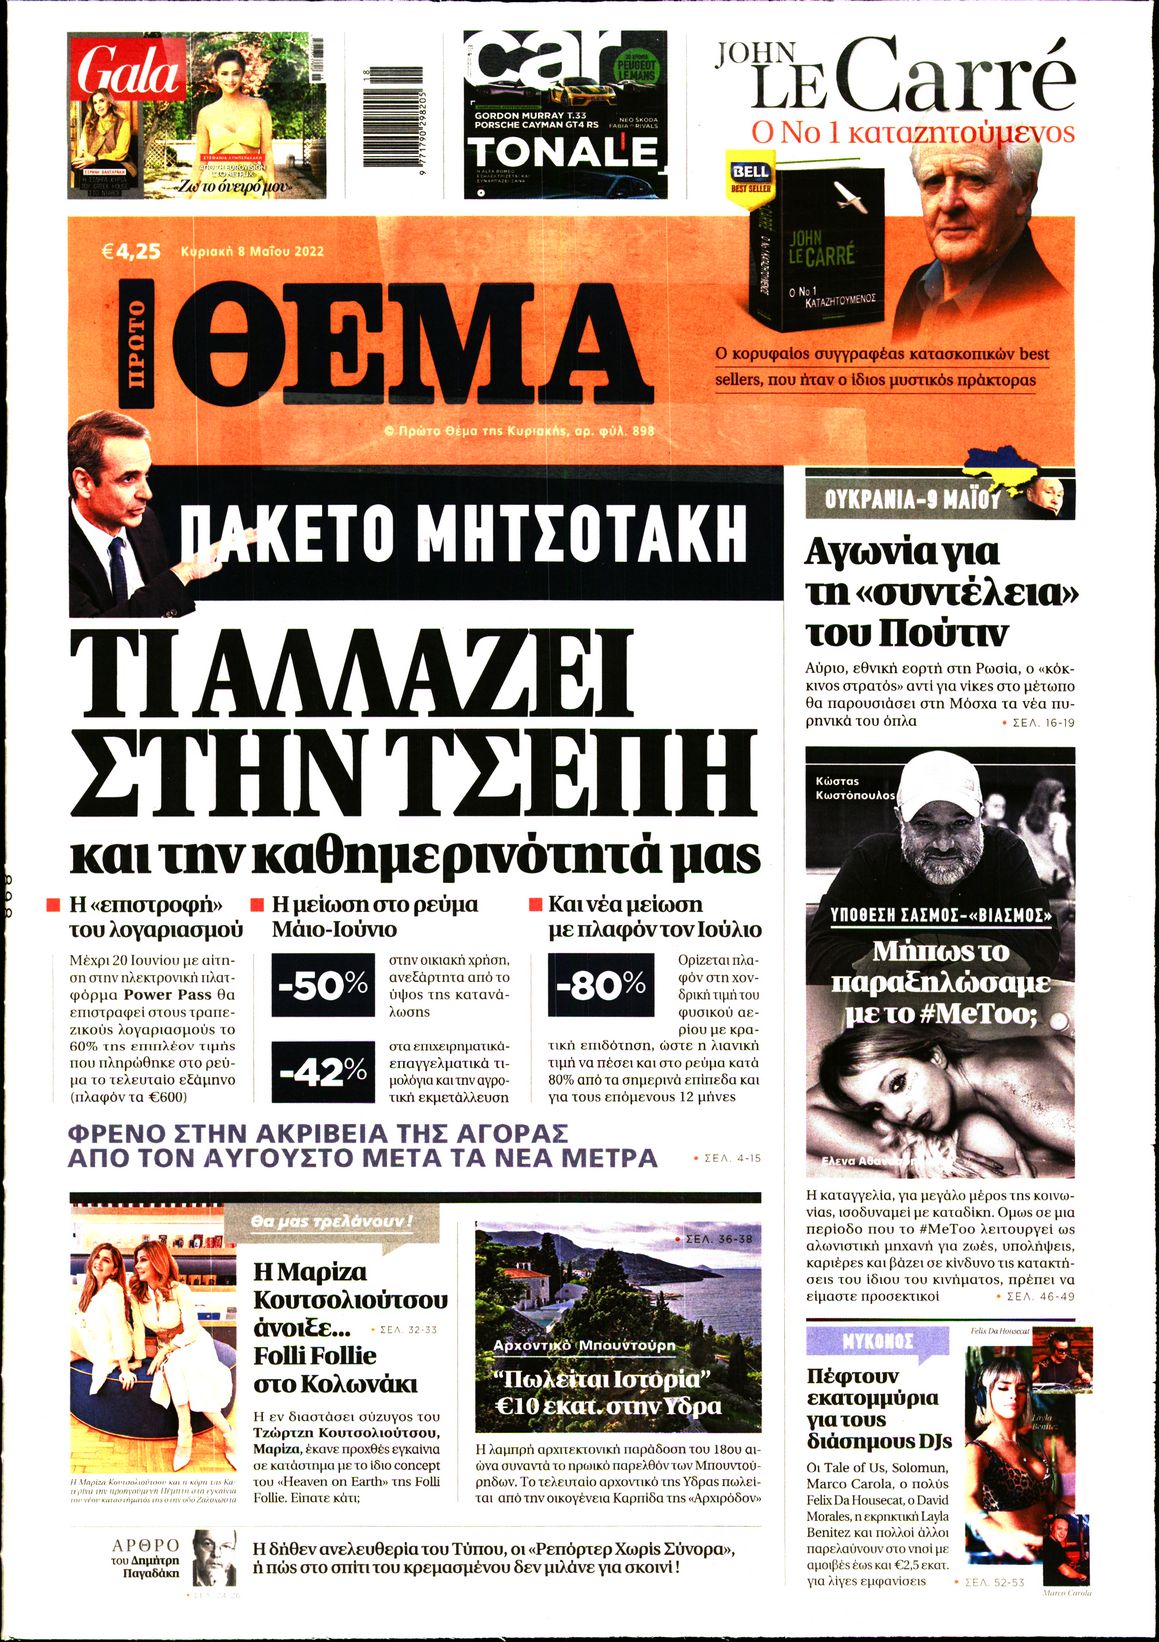 Εξώφυλο εφημερίδας ΠΡΩΤΟ ΘΕΜΑ 2022-05-08